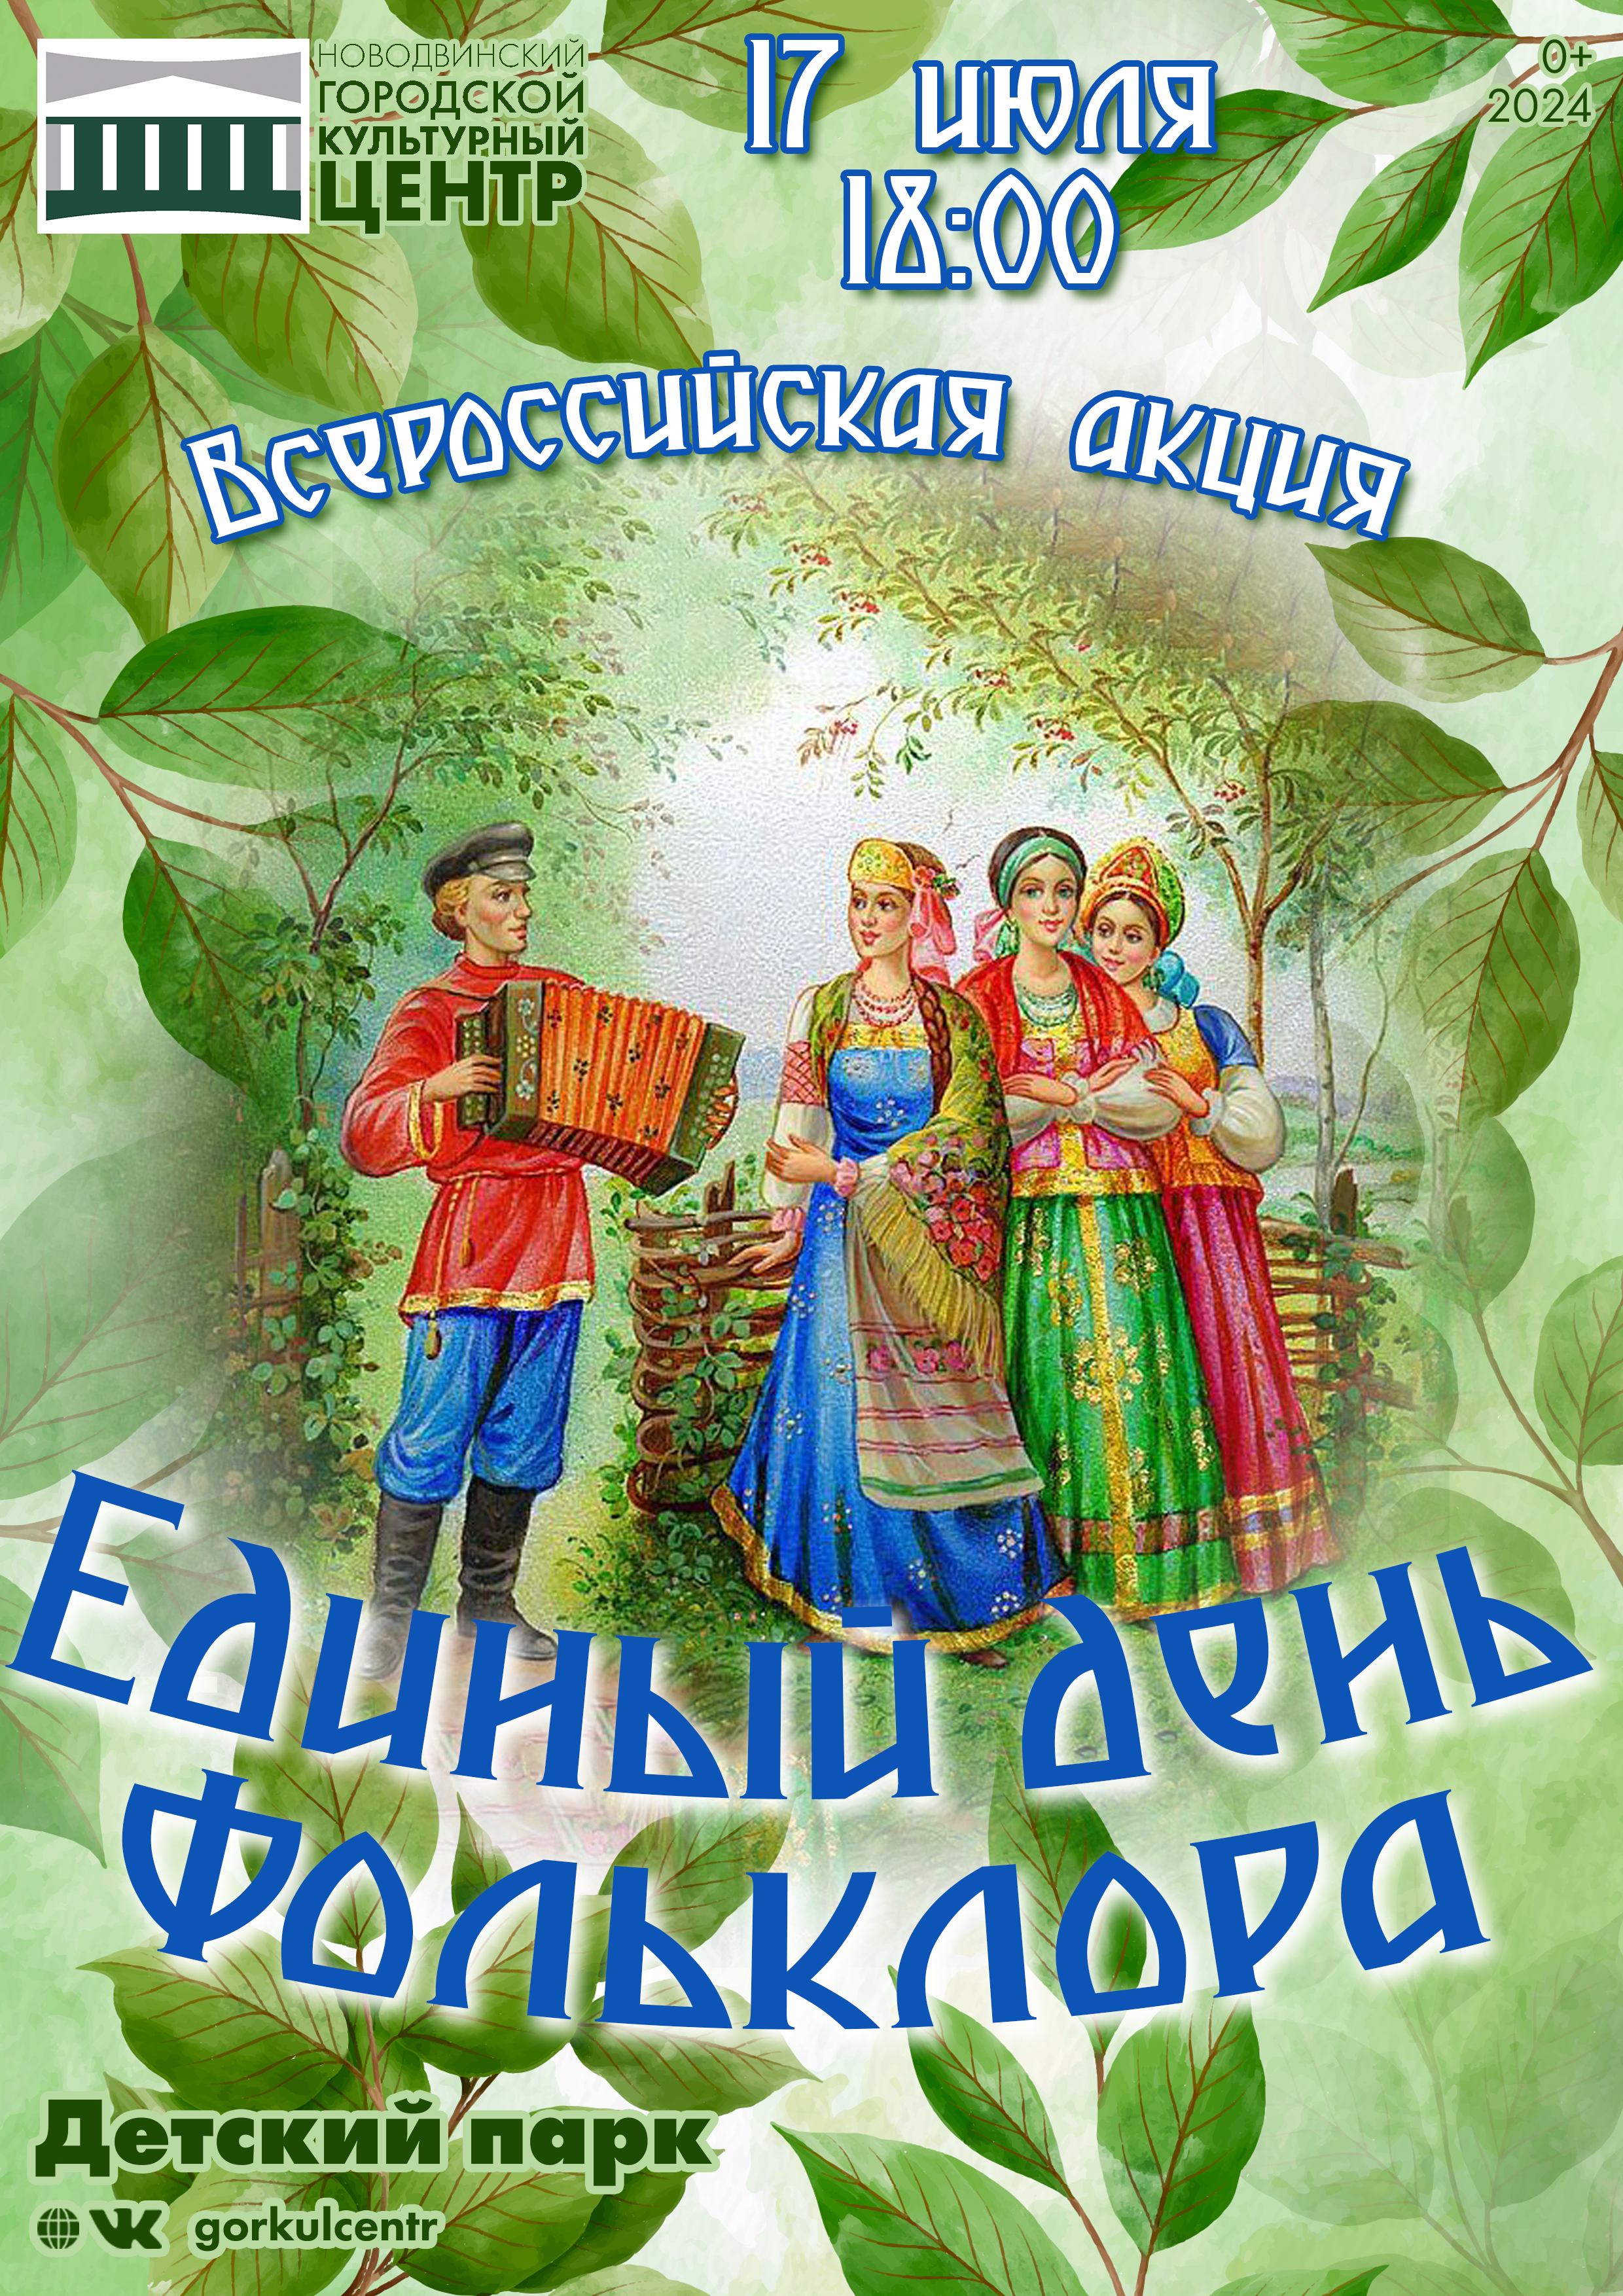 В эту среду в детском парке состоится Всероссийская акция «Единый день фольклора»!